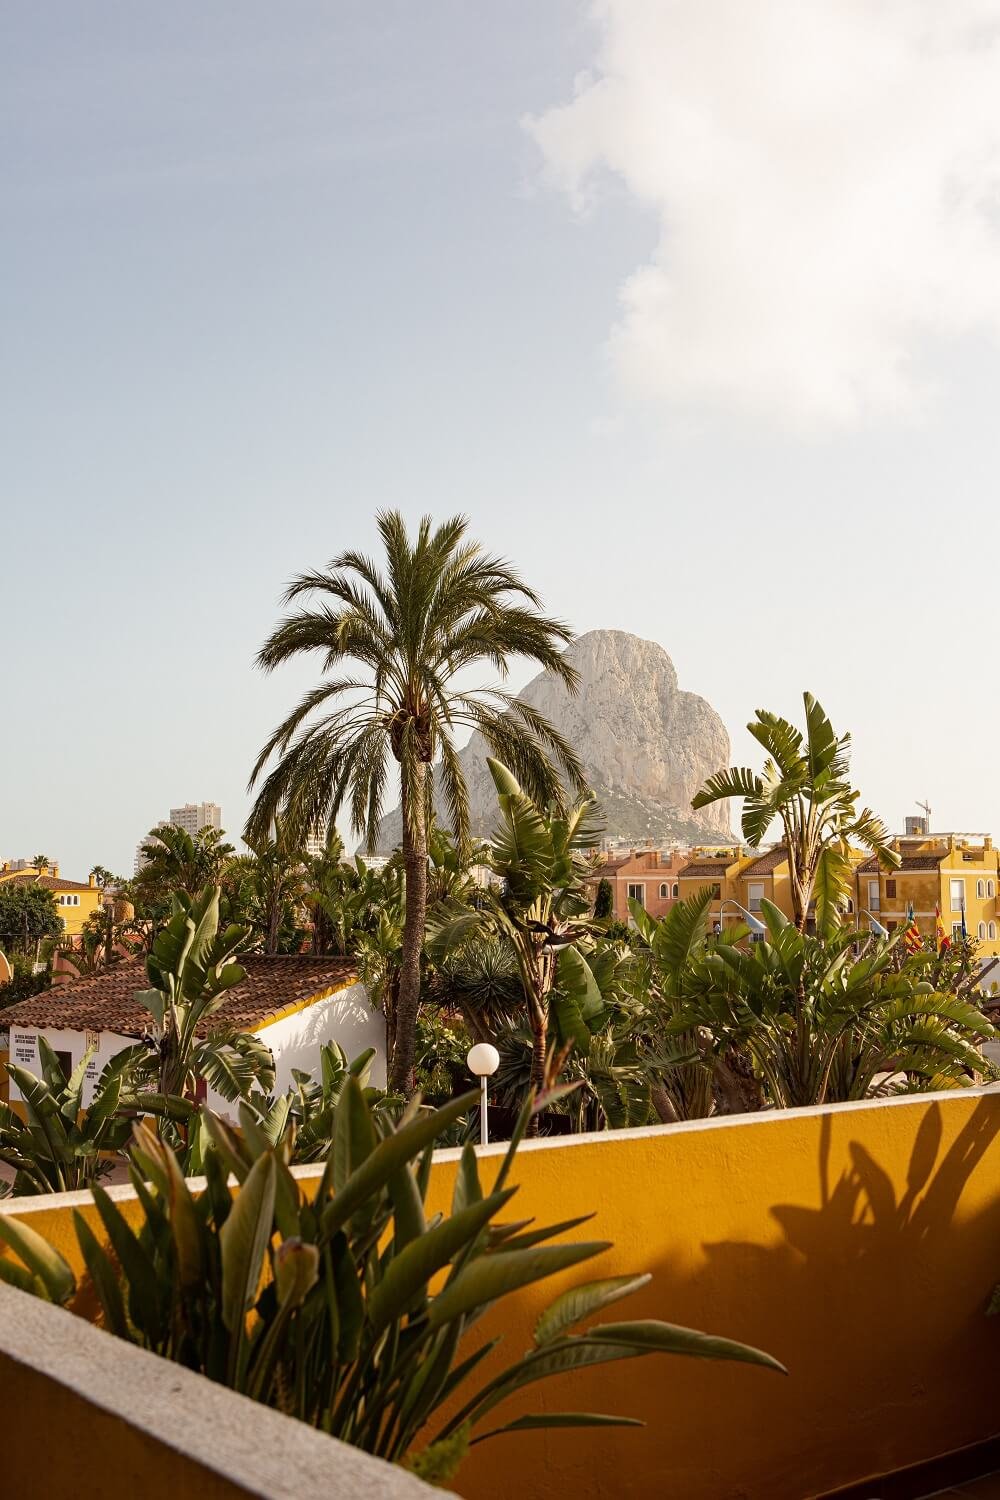 Pared de terraza pintada de amarillo y palmeras